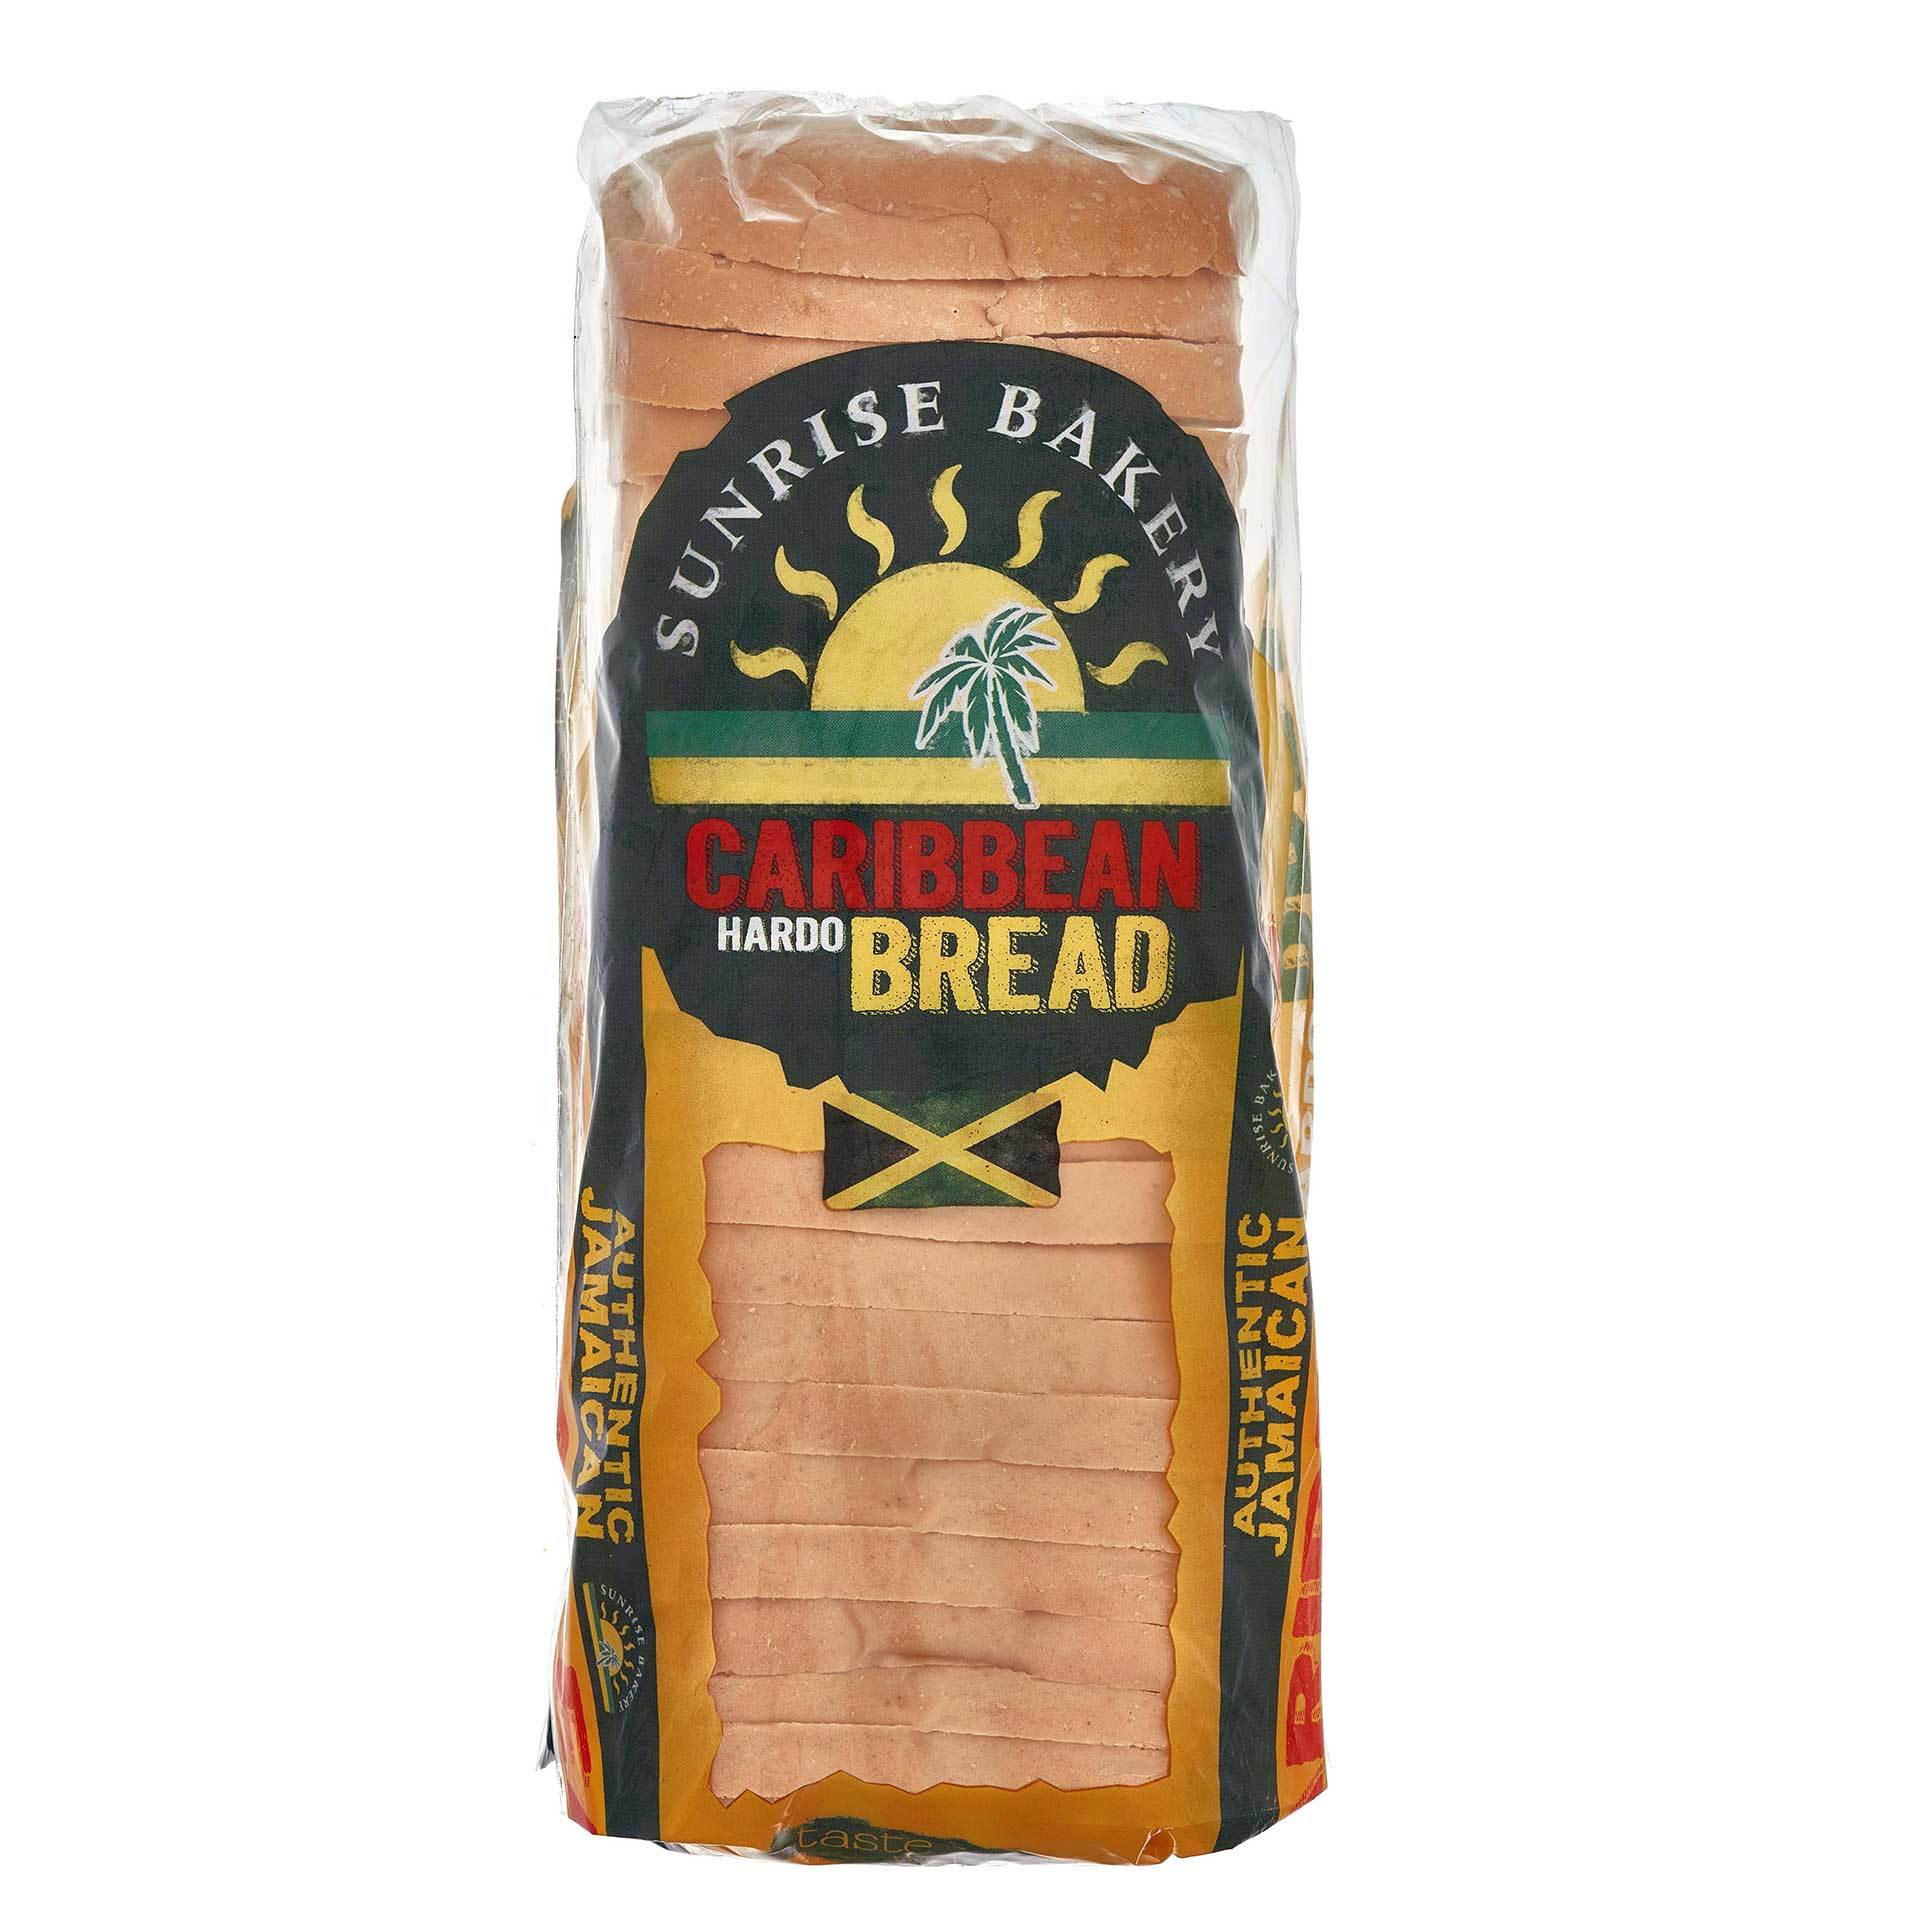 Caribbean Hardo bread